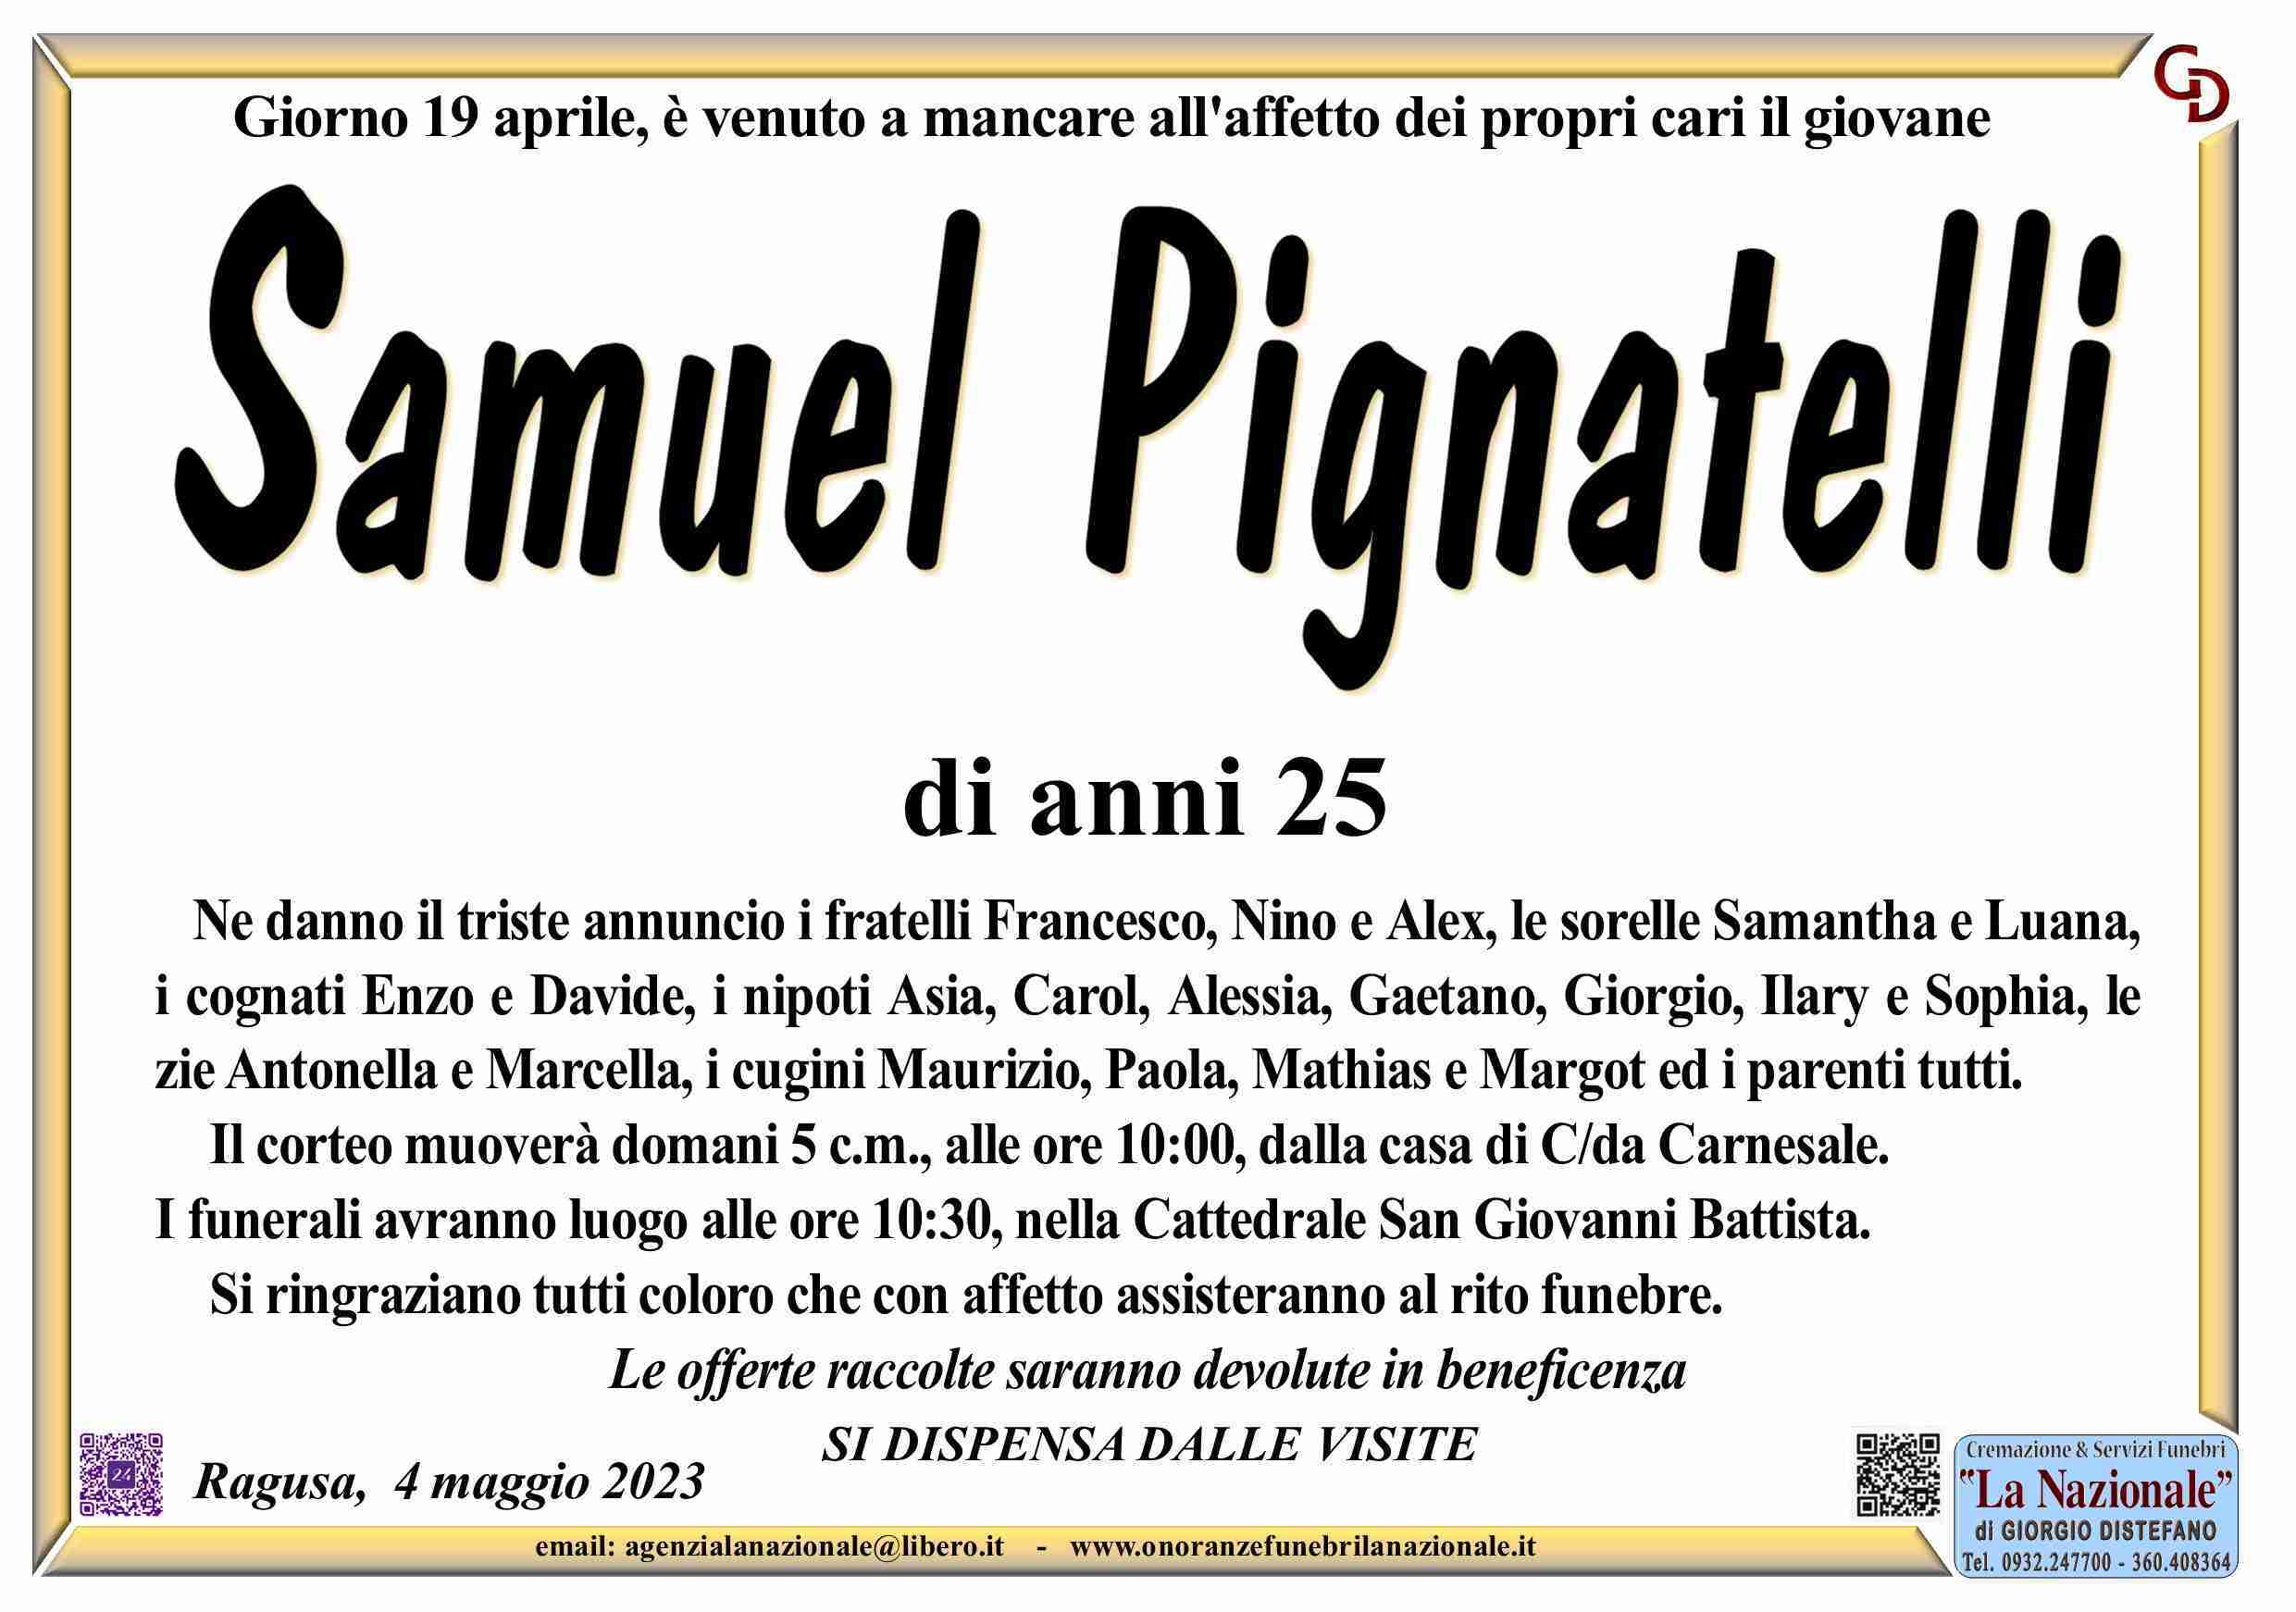 Samuel Pignatelli